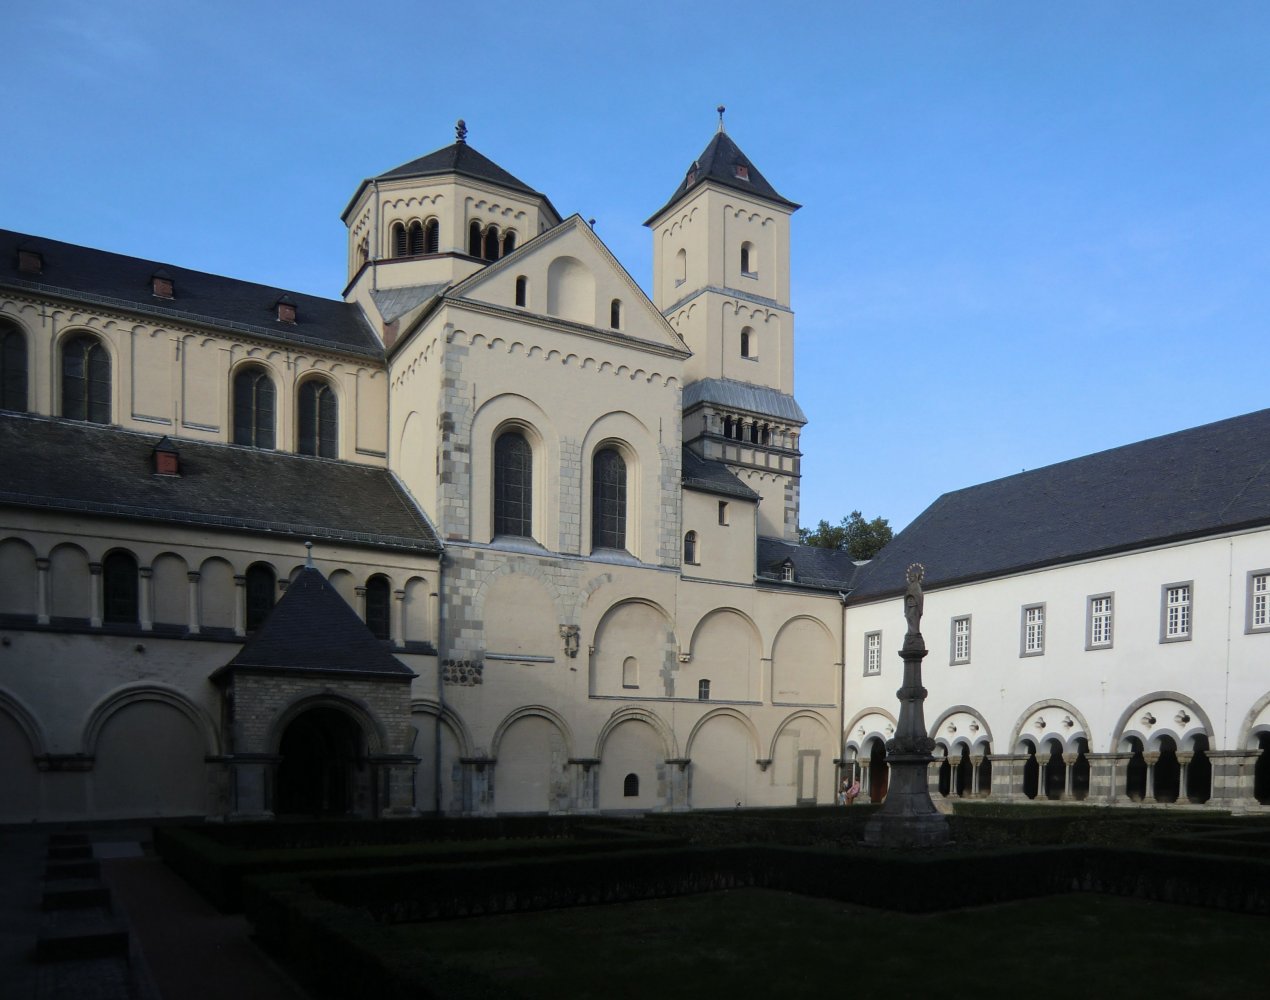 Abtei Brauweiler mit Kreuzgang und Kirche aus dem 12. Jahrhundert